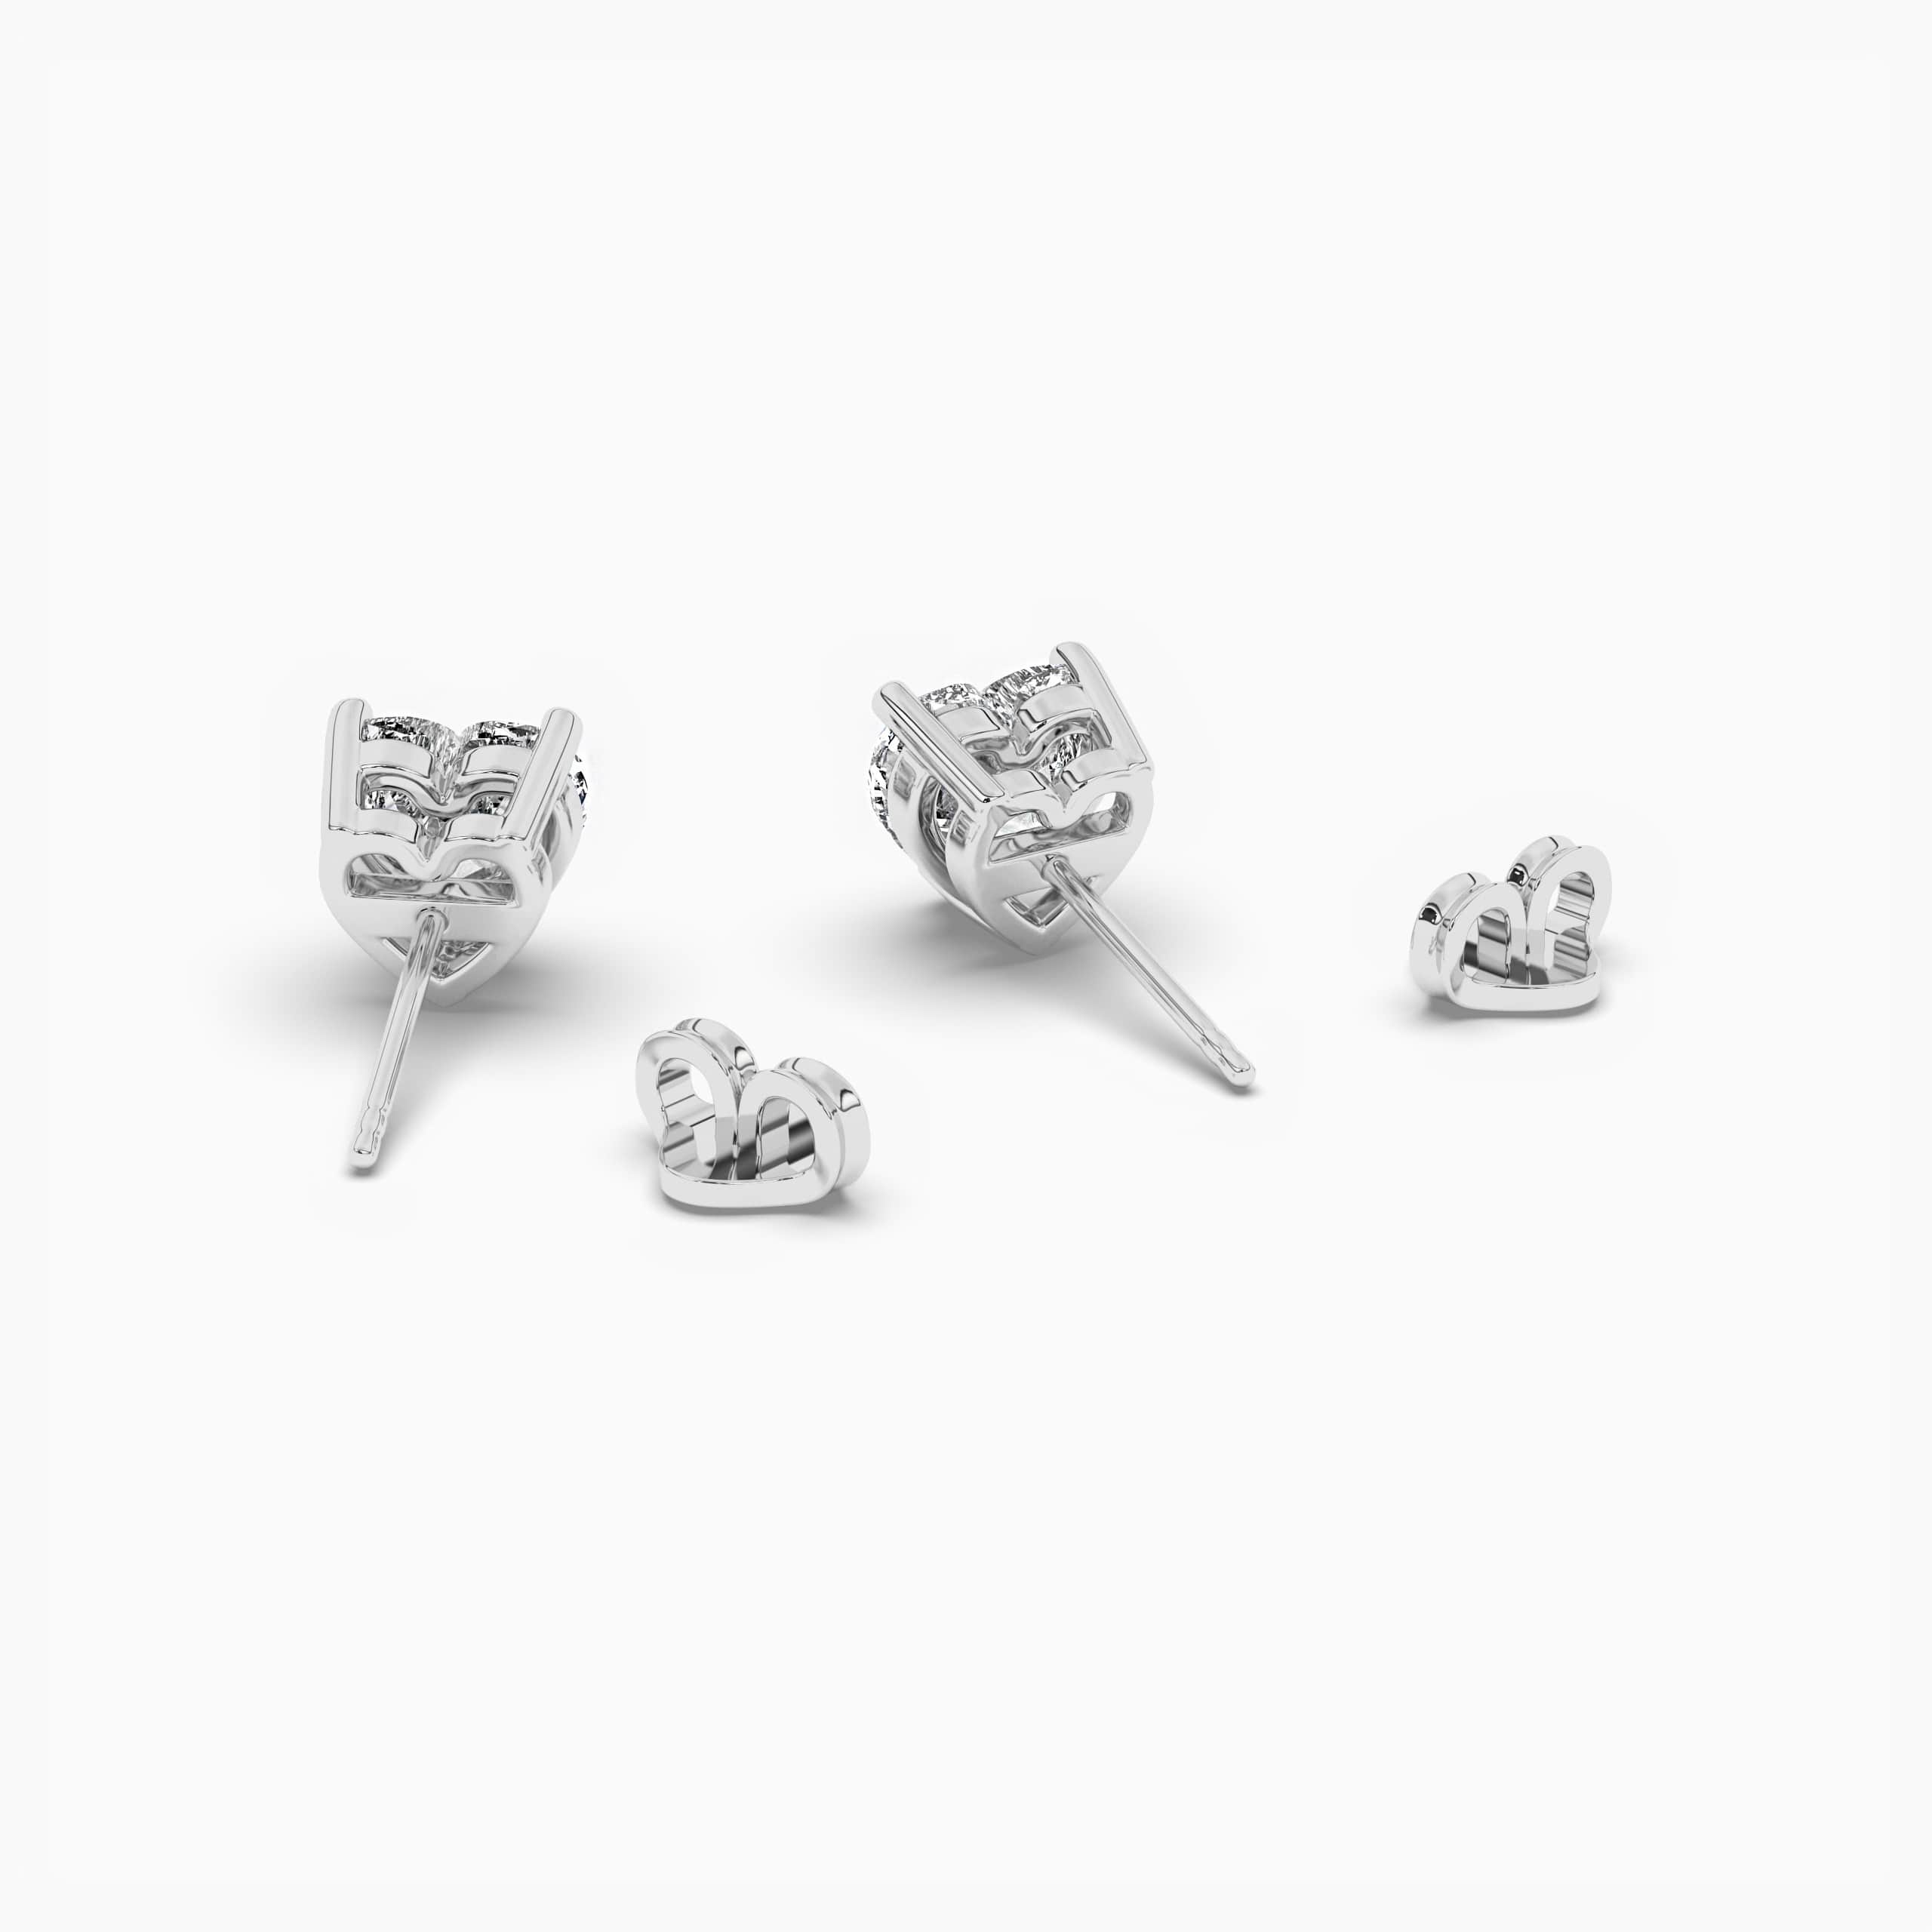 1.50 carat Heart Cut Moissanite Stud Earrings